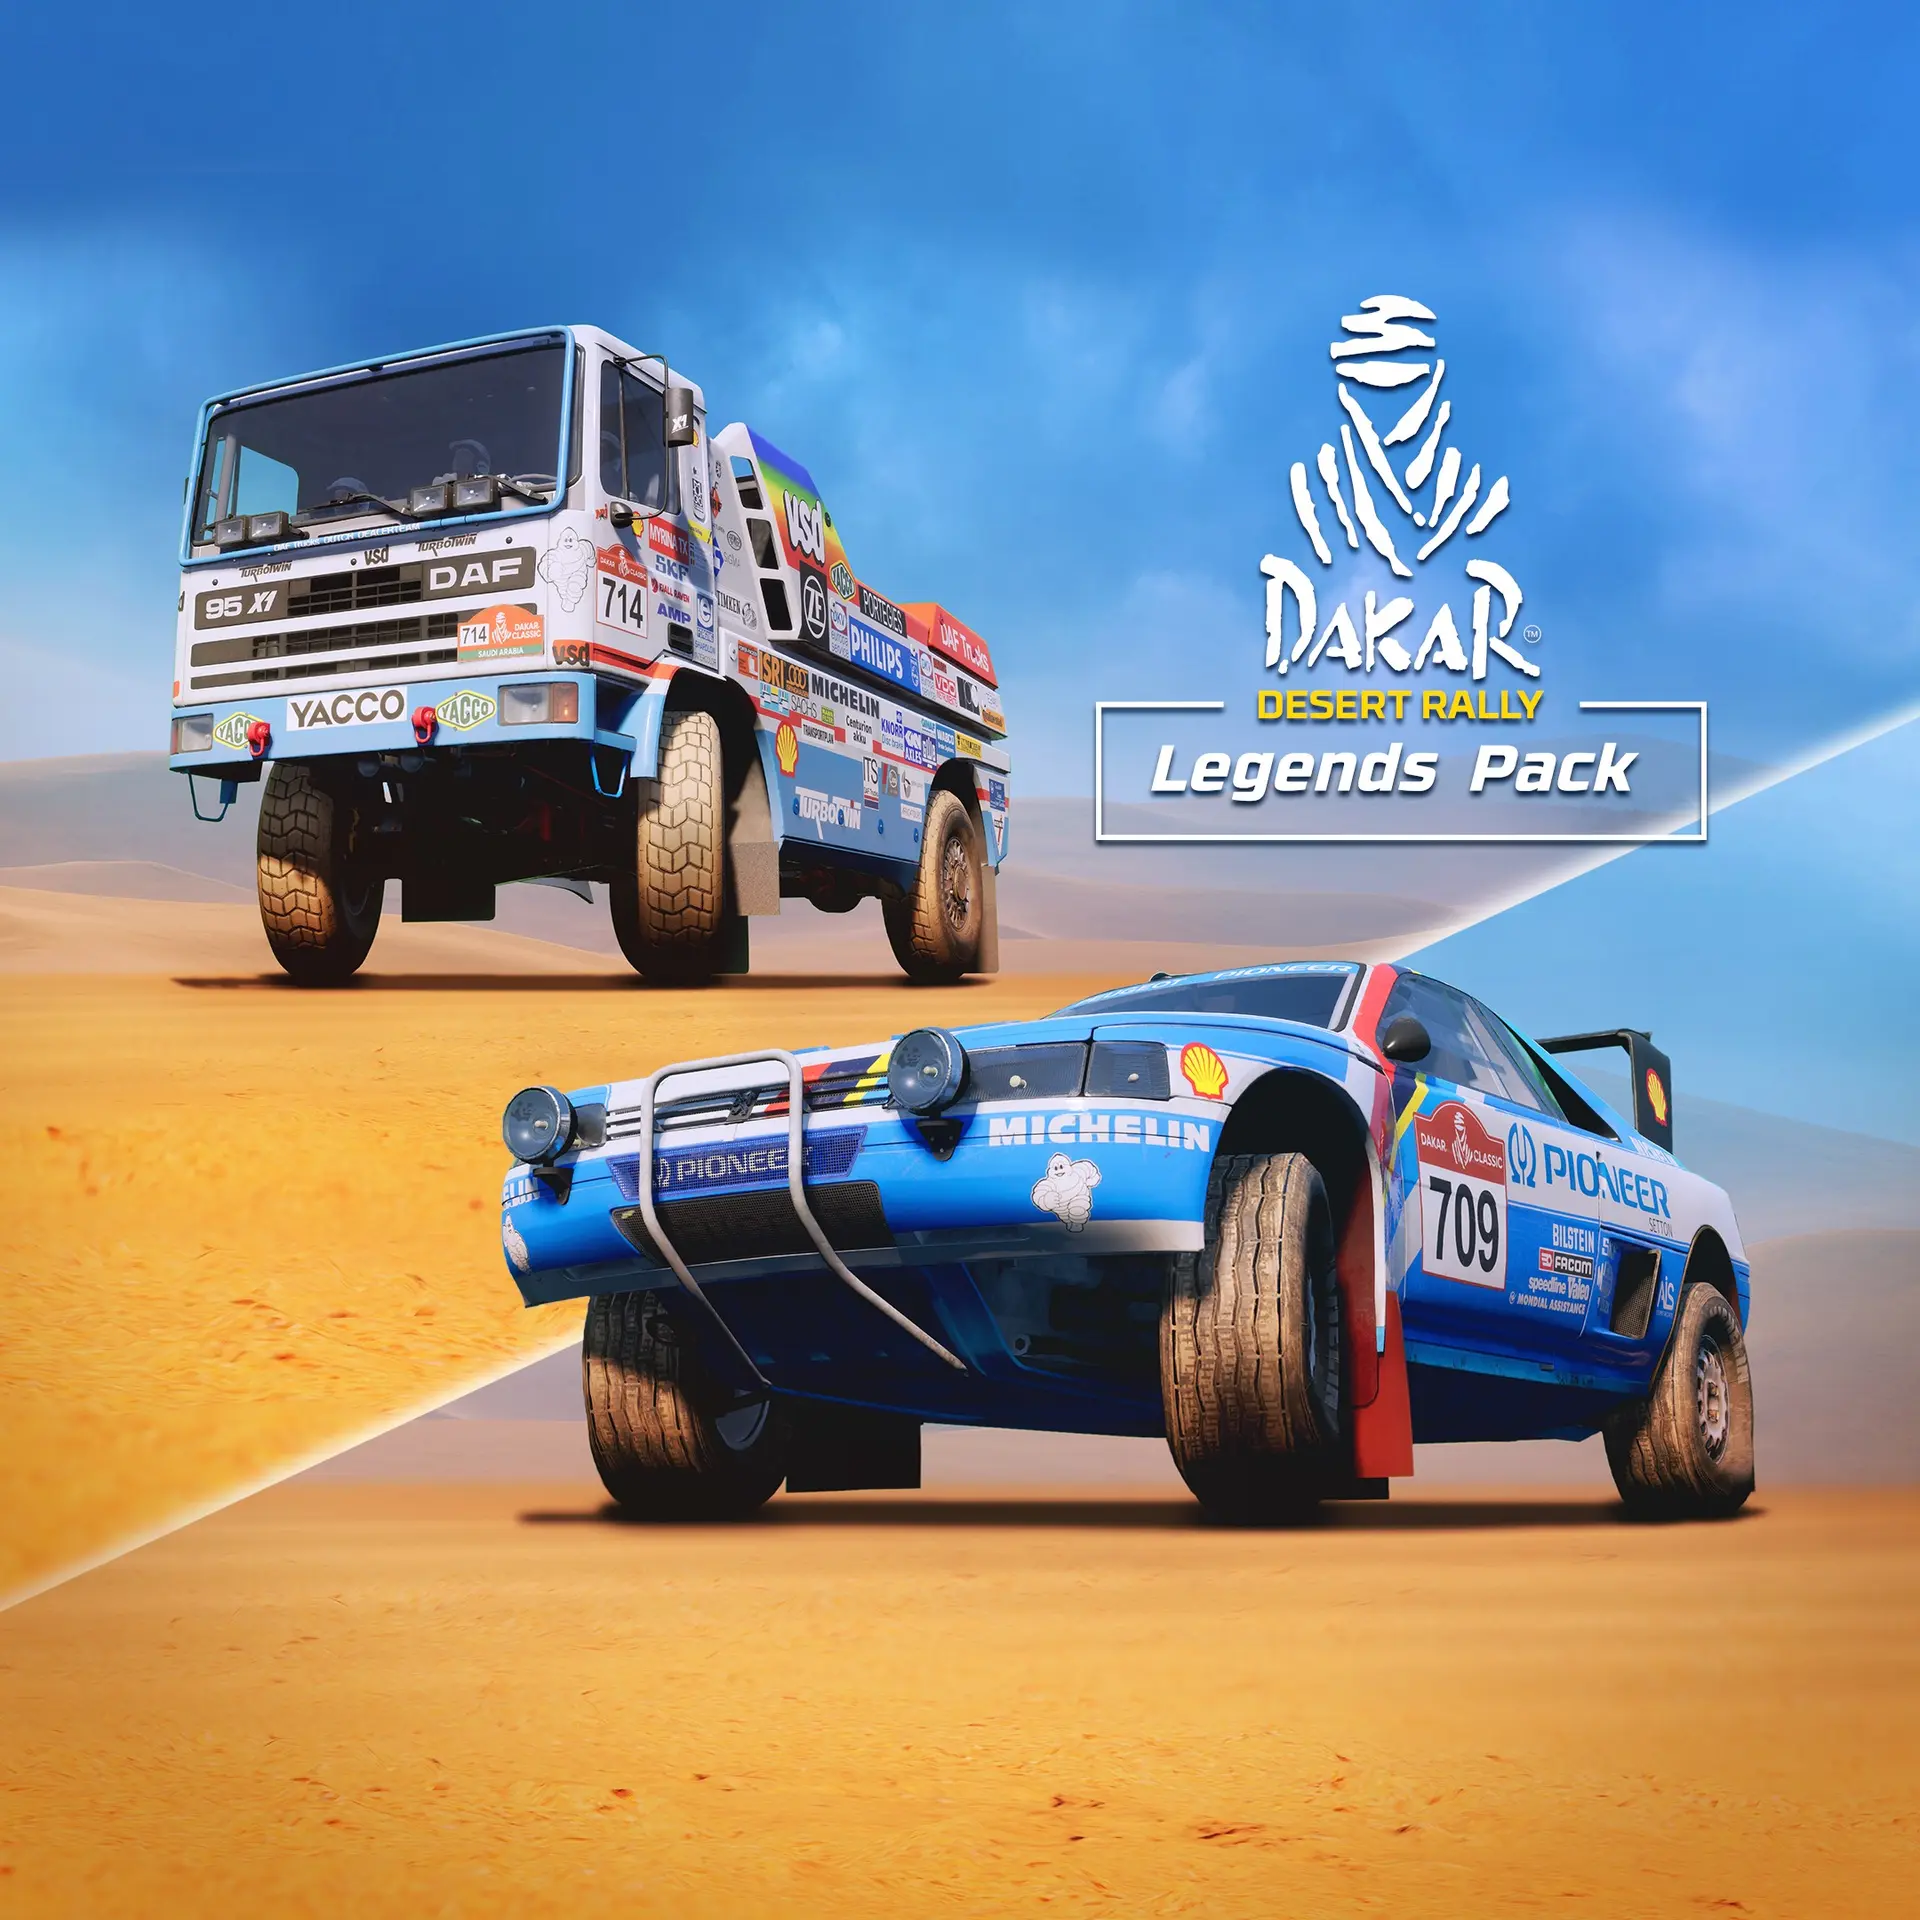 Dakar Desert Rally - Legends Pack (XBOX One - Cheapest Store)